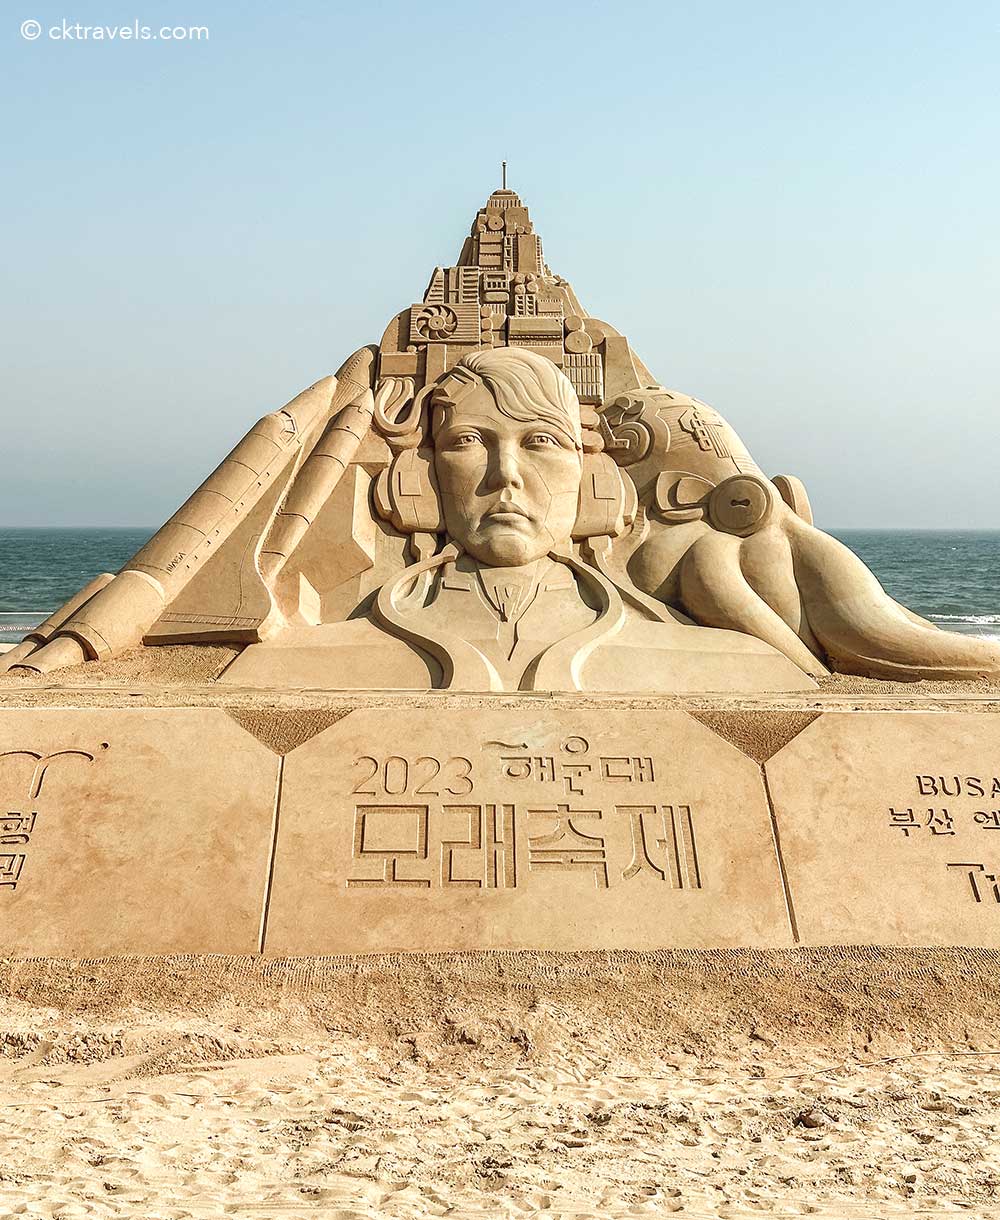 Busan Haeundae Beach Sand Festival - things to do in Busan